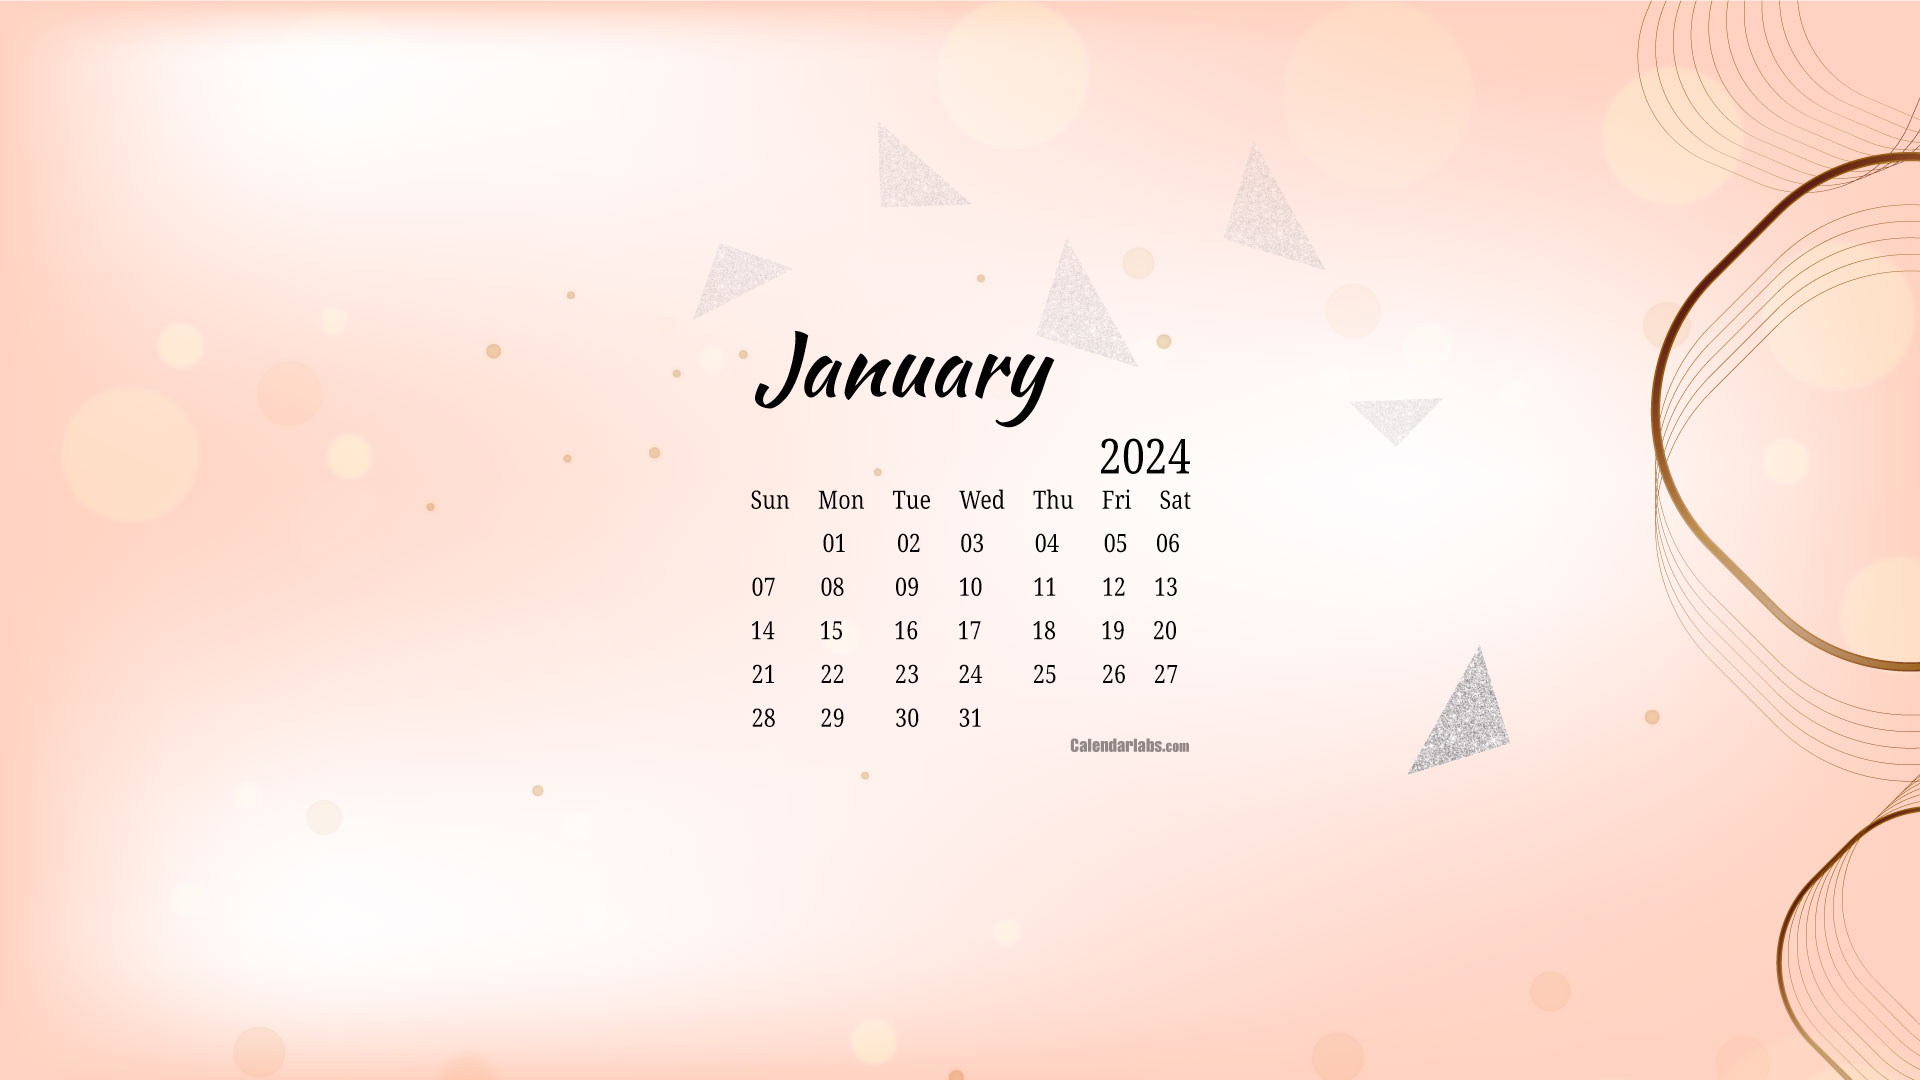 Bạn muốn có một lịch để giúp bạn lên kế hoạch và tổ chức công việc mỗi ngày? Hãy xem ngay ảnh Desktop wallpaper calendar để tải về và sử dụng nhé!